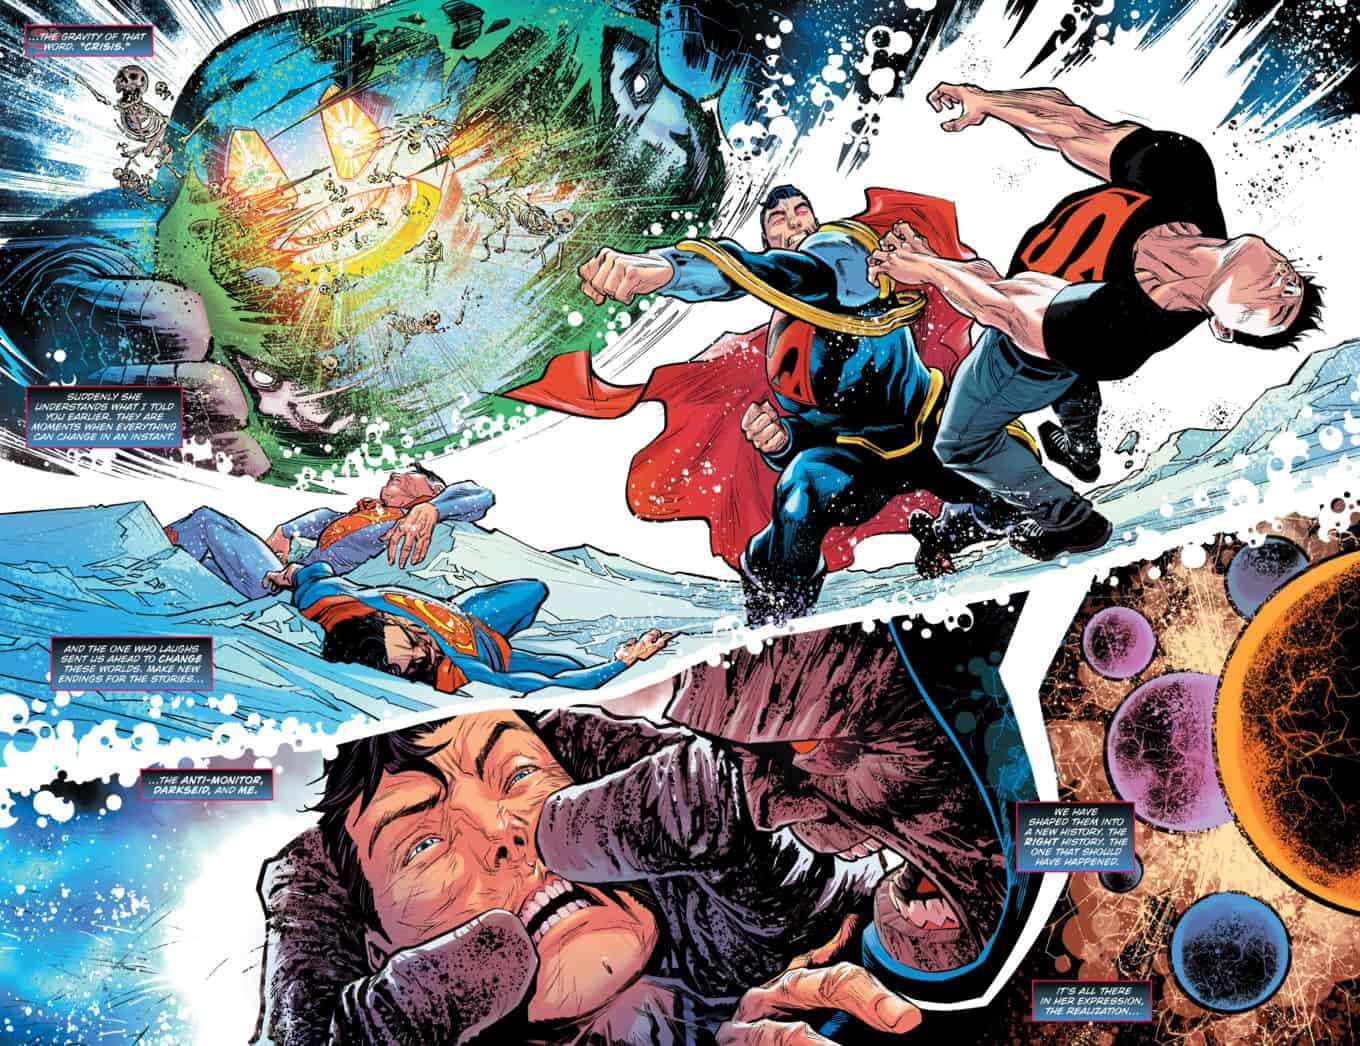 DC-Comics-Death-Metal-Trinity-Crisis-1-spoilers-18.jpg